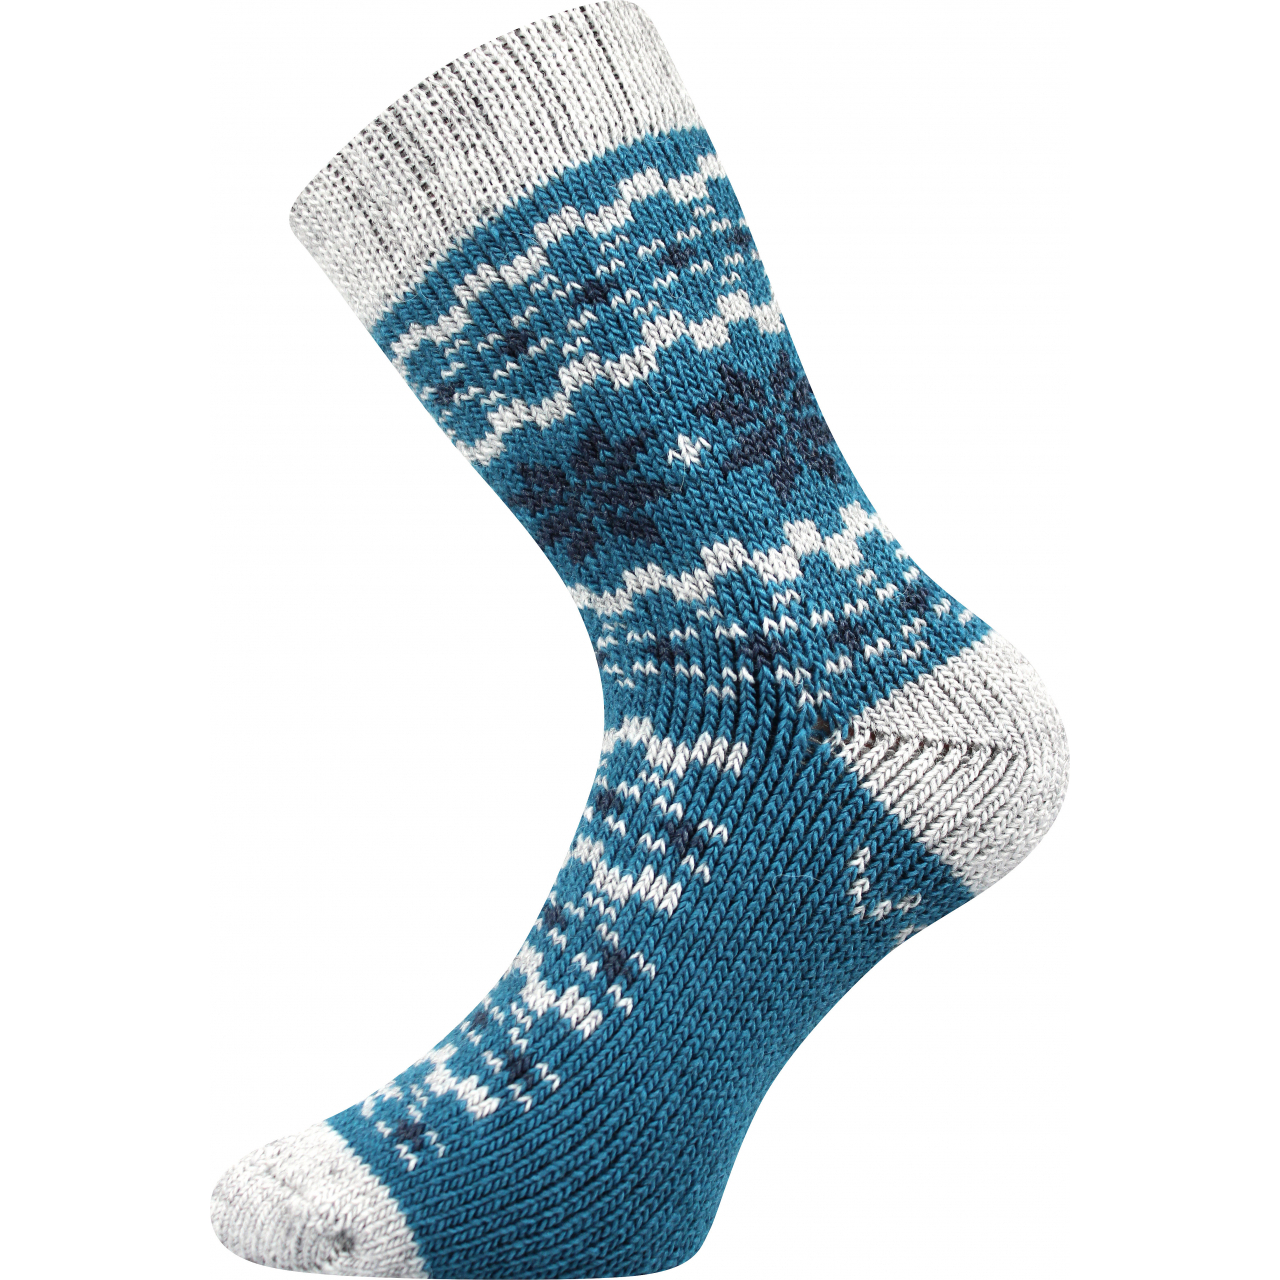 Ponožky unisex zimní Voxx Trondelag - modré-šedé, 35-38